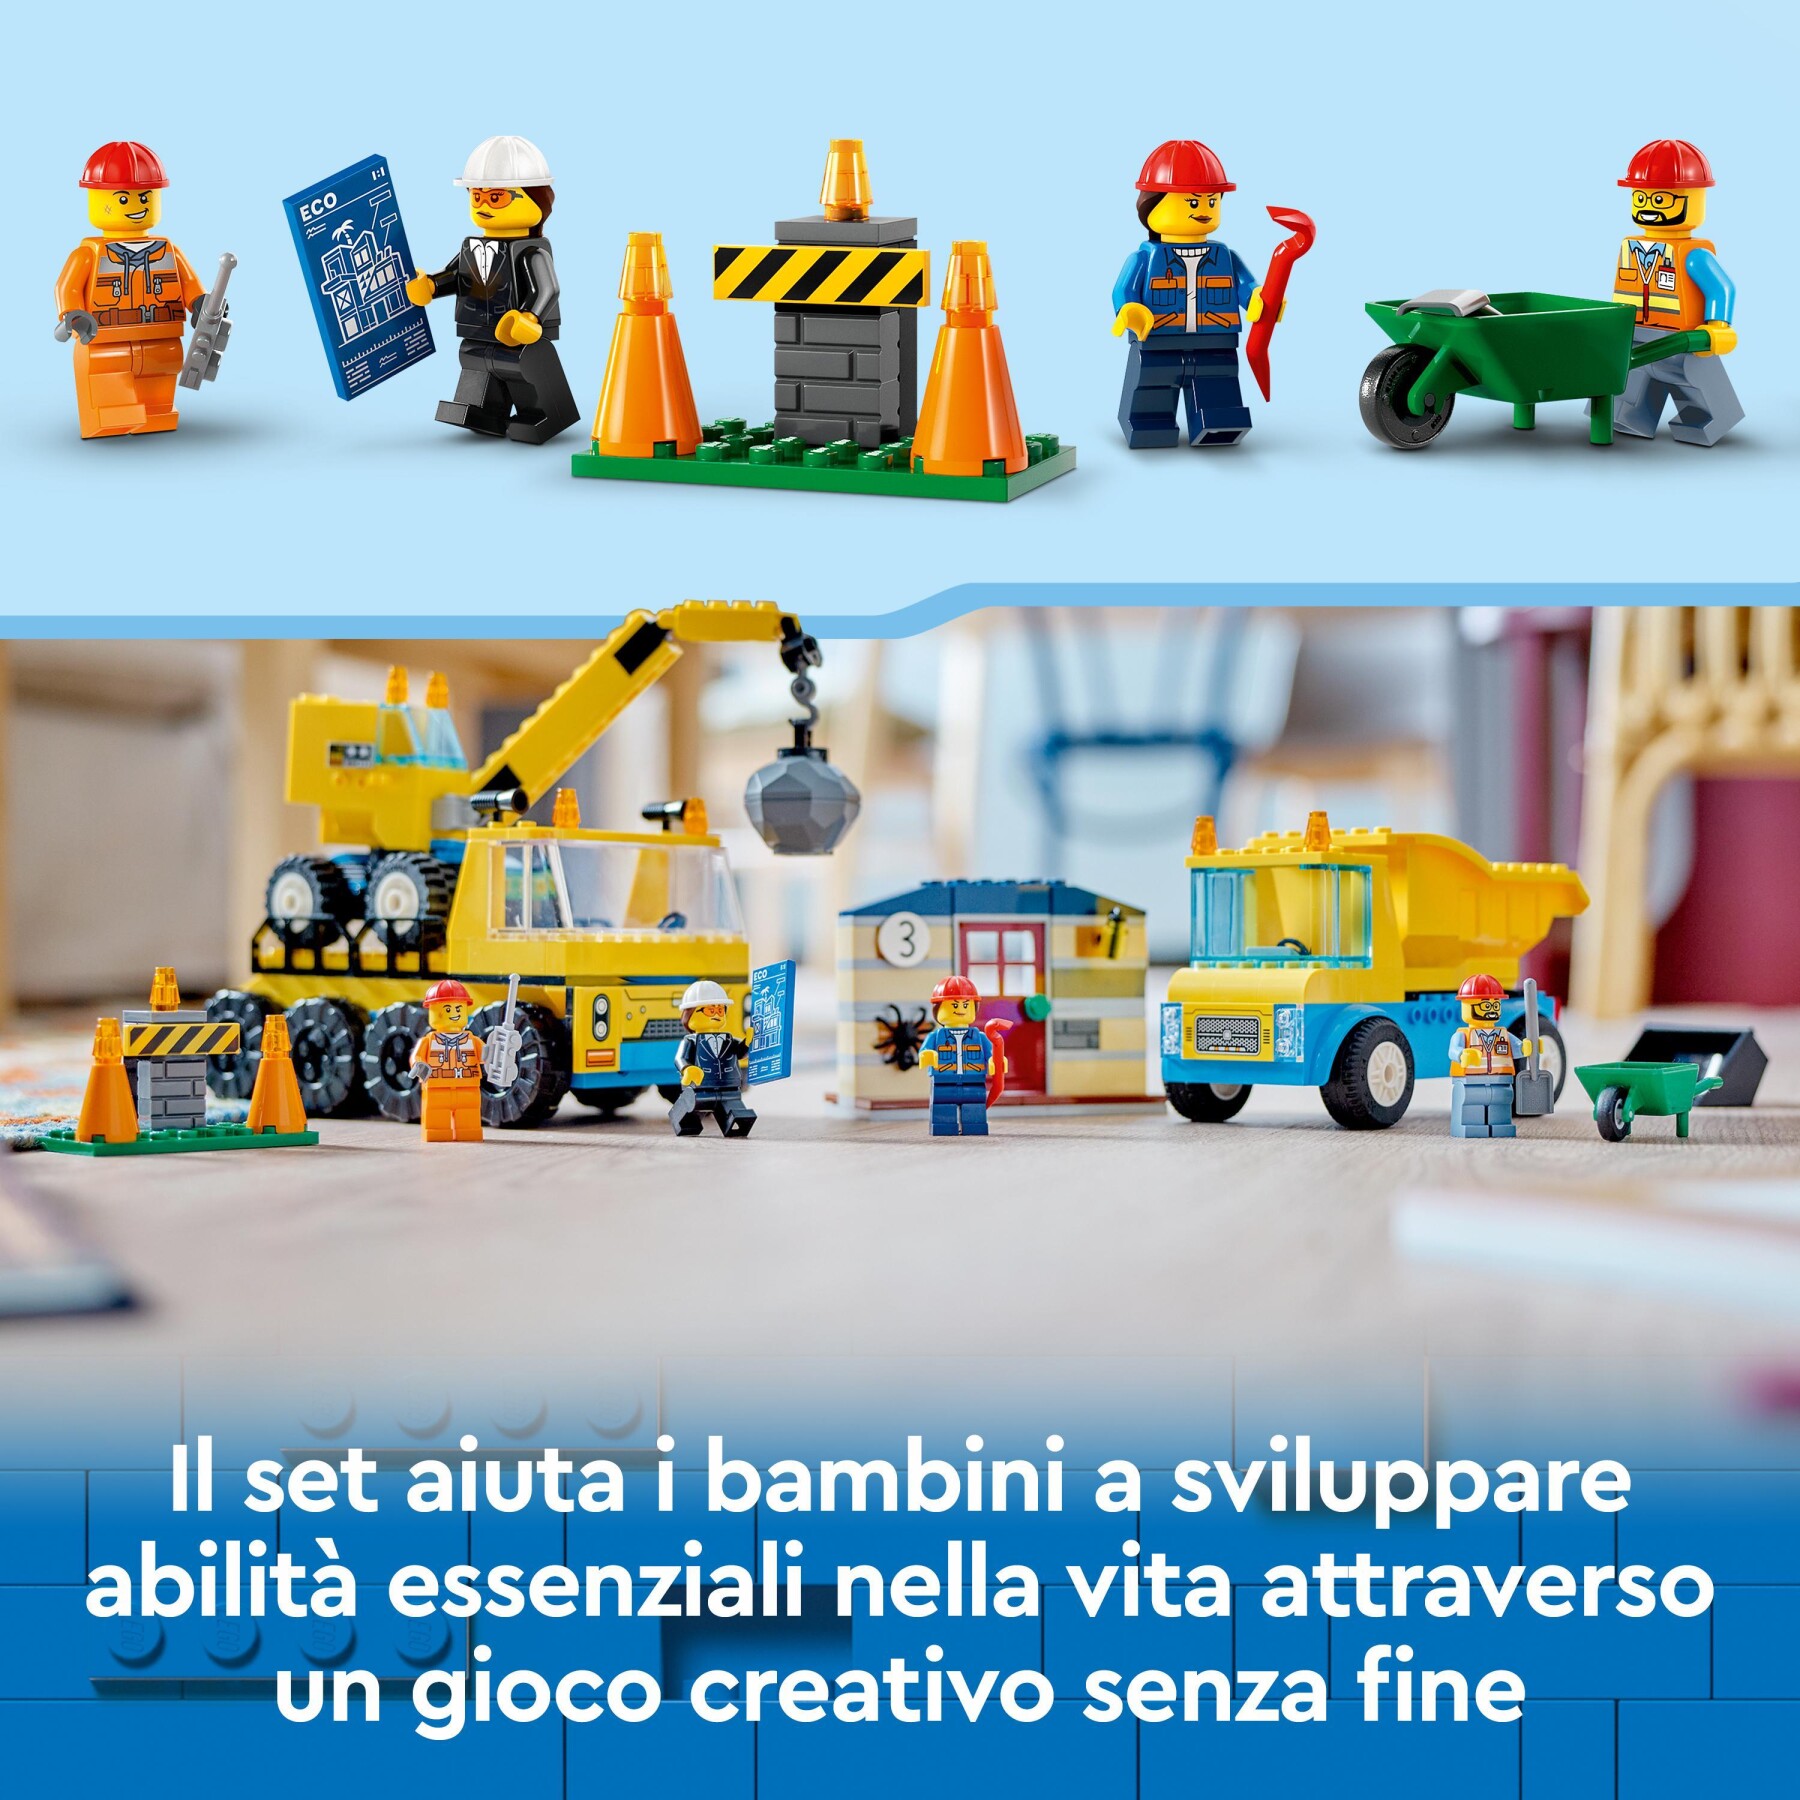 Lego city 60391 camion da cantiere e gru con palla da demolizione, set con veicoli giocattolo, giochi educativi per bambini 4+ - LEGO CITY